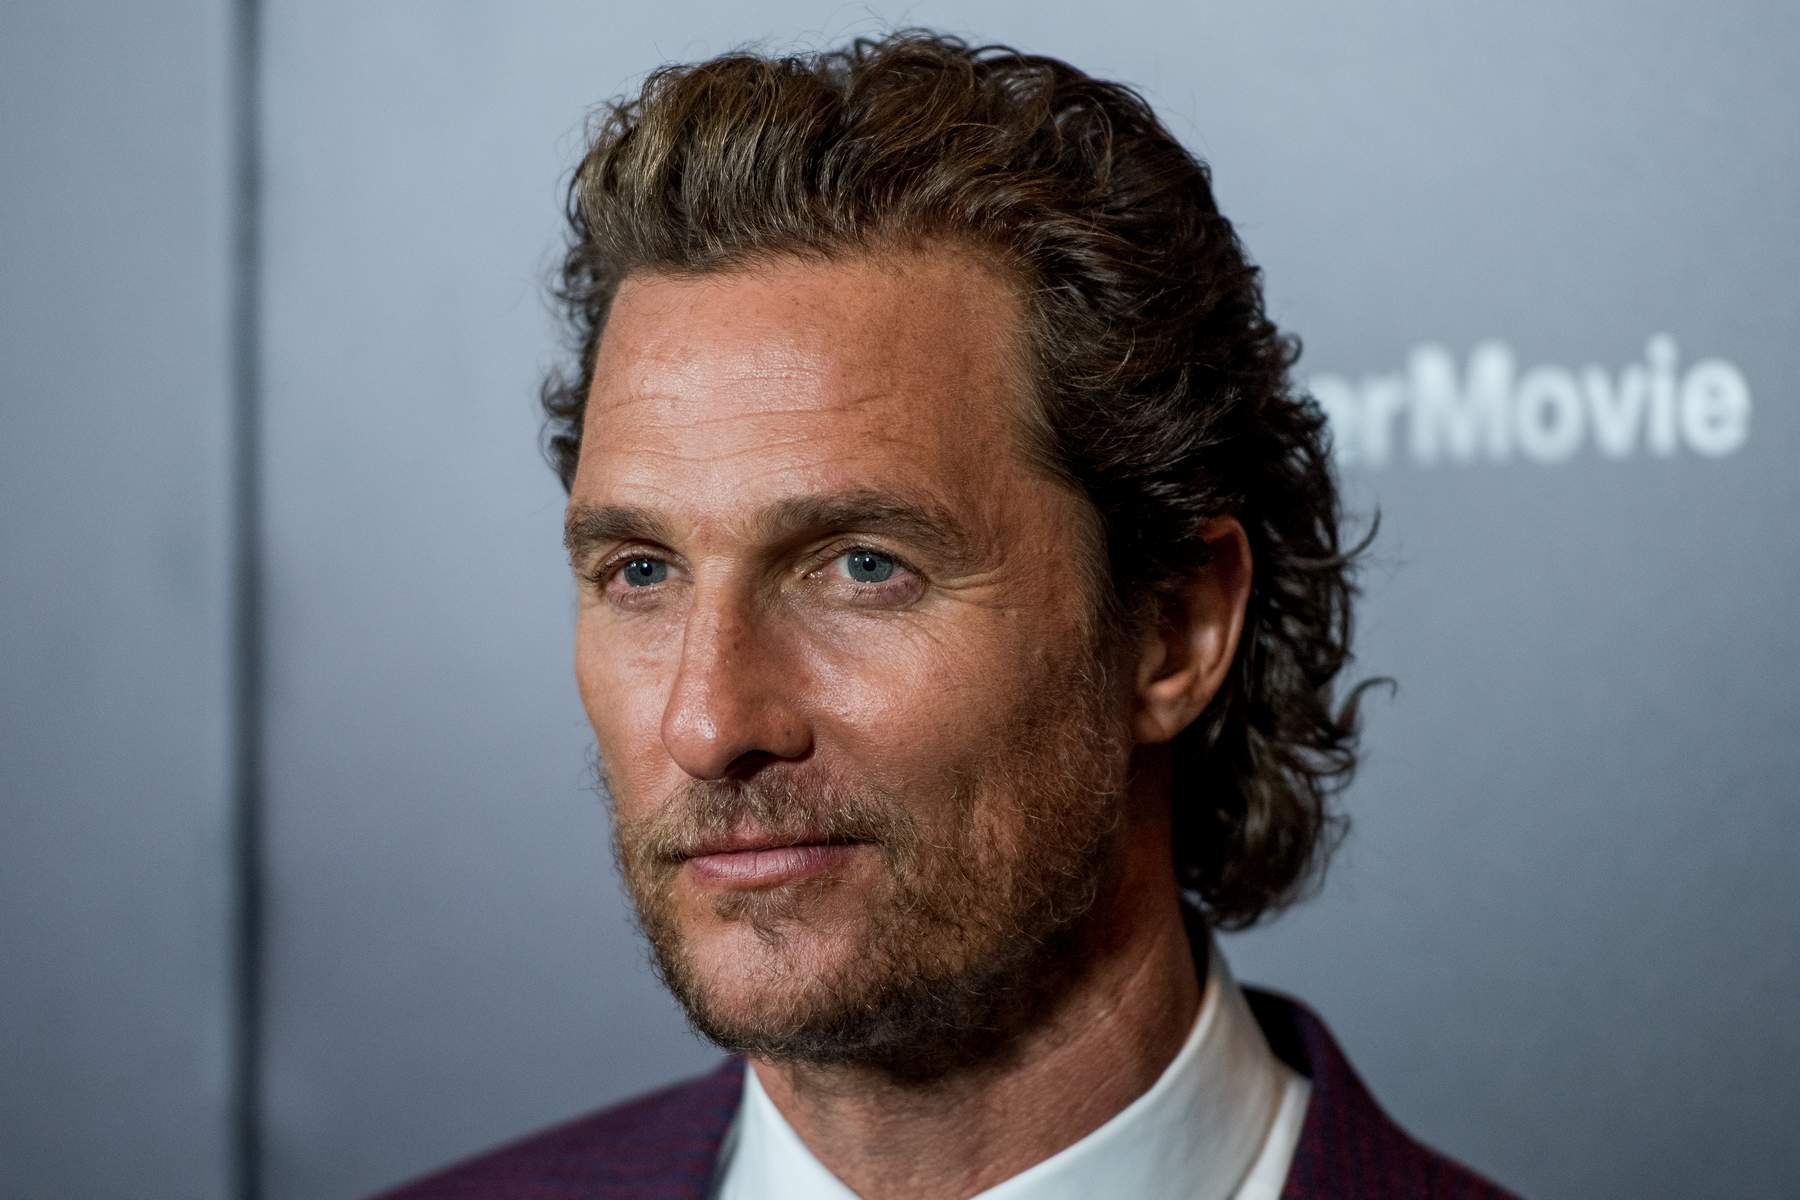  Actorul Matthew McConaughey a dezvăluit că a fost abuzat sexual în adolescenţă